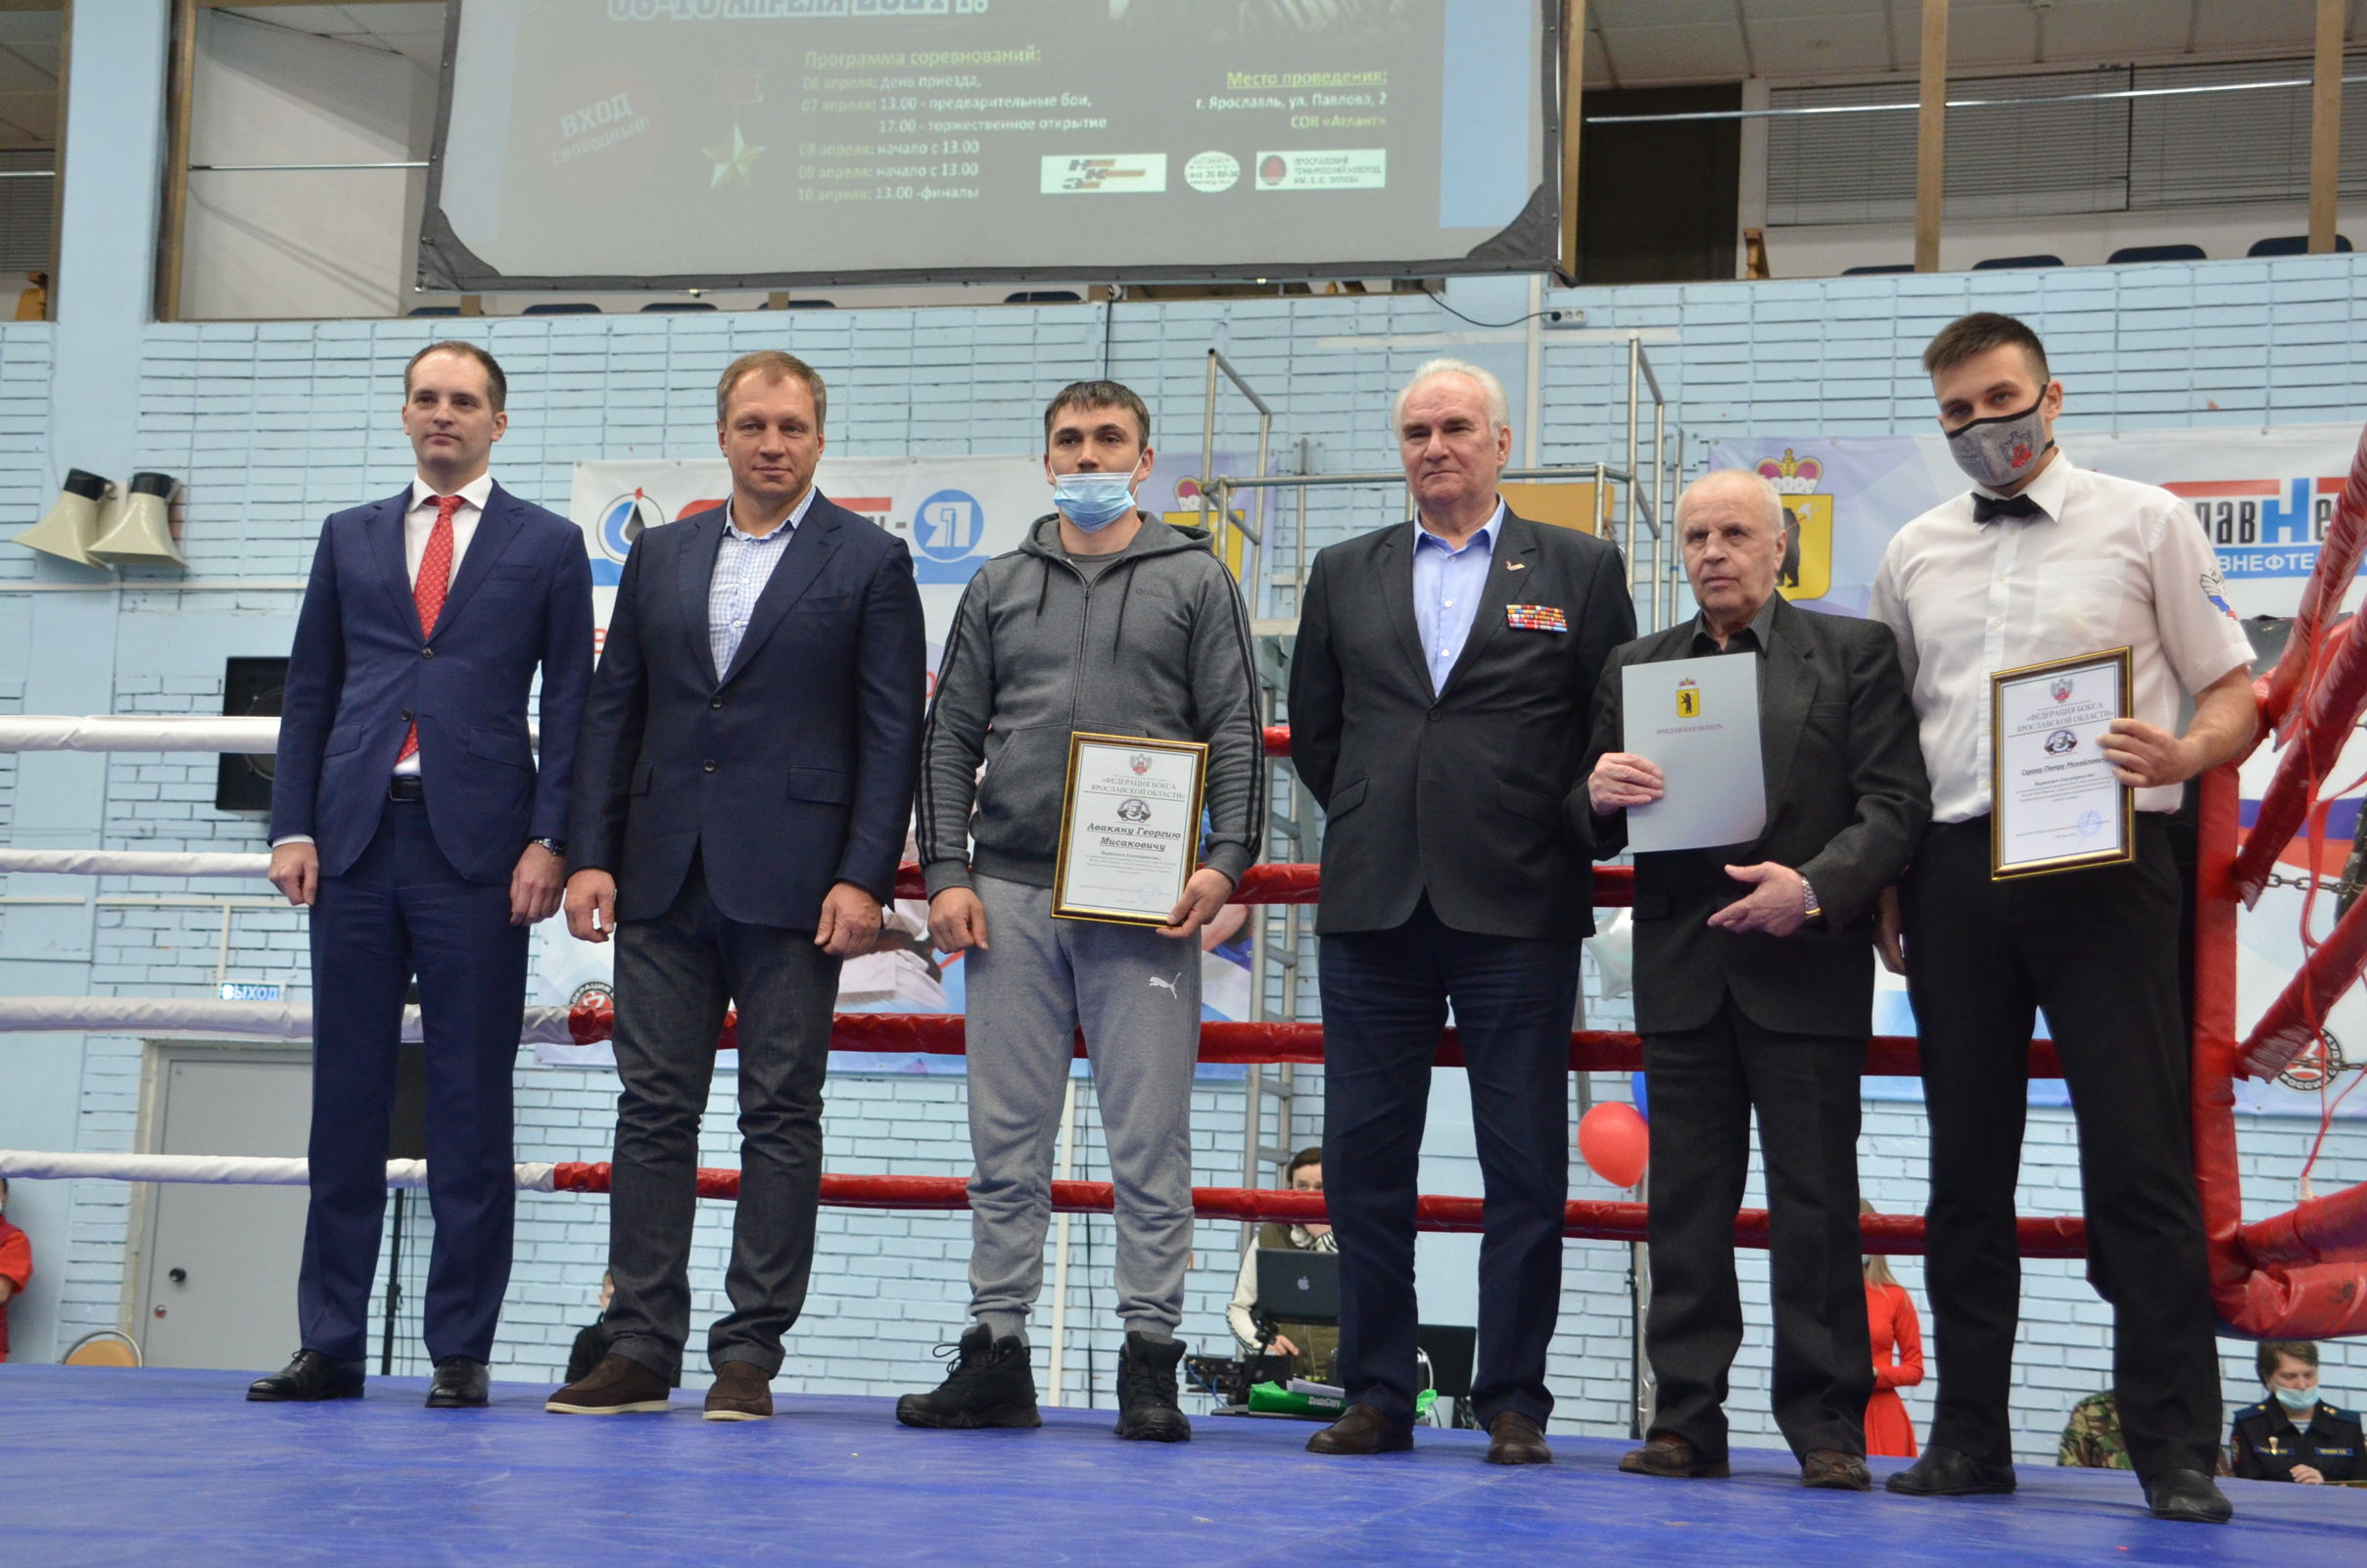 Более 30 медалей различного достоинства завоевали боксеры области на турнире памяти Юрия Сироткина